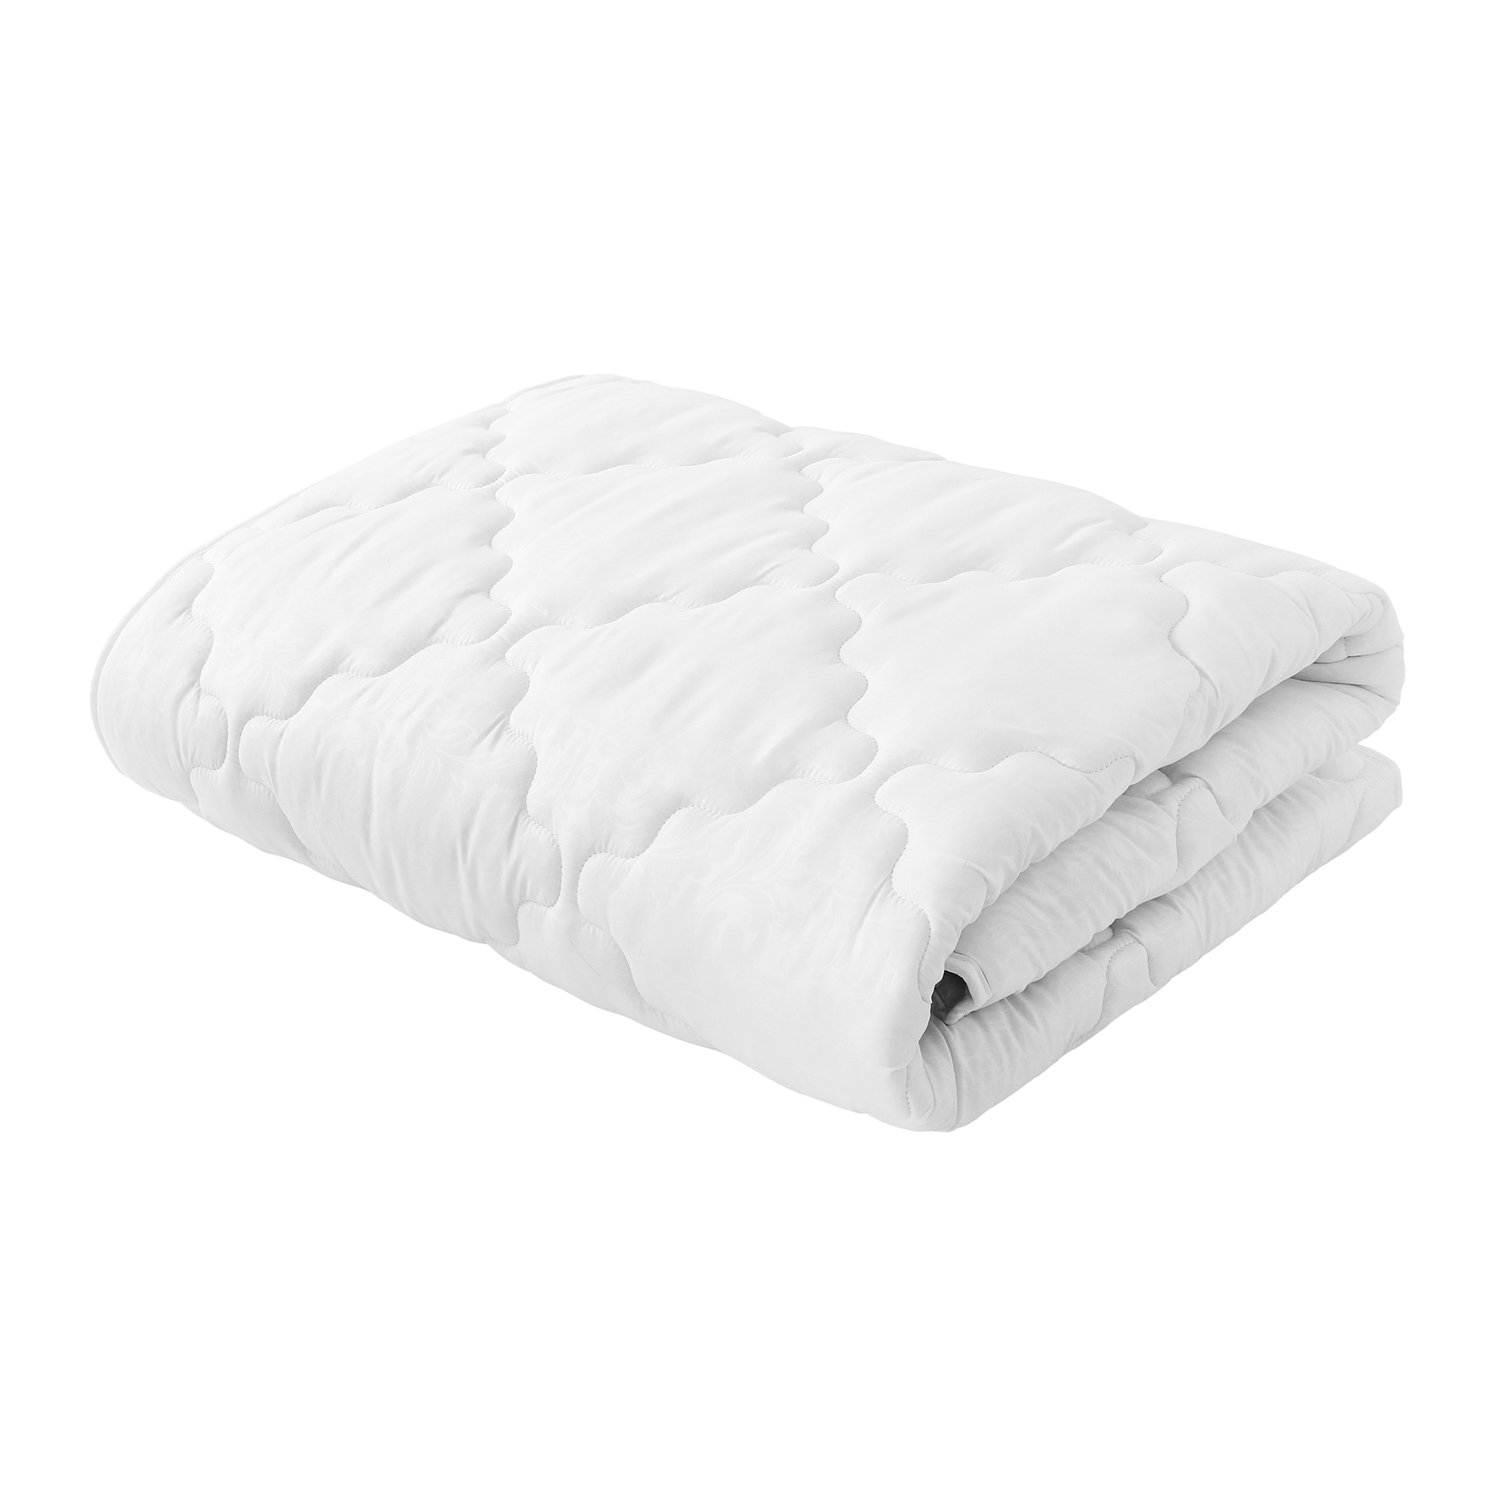 Одеяло Белая ветка (200х220 см), размер 200х220 см samo826550 Одеяло Белая ветка (200х220 см) - фото 1